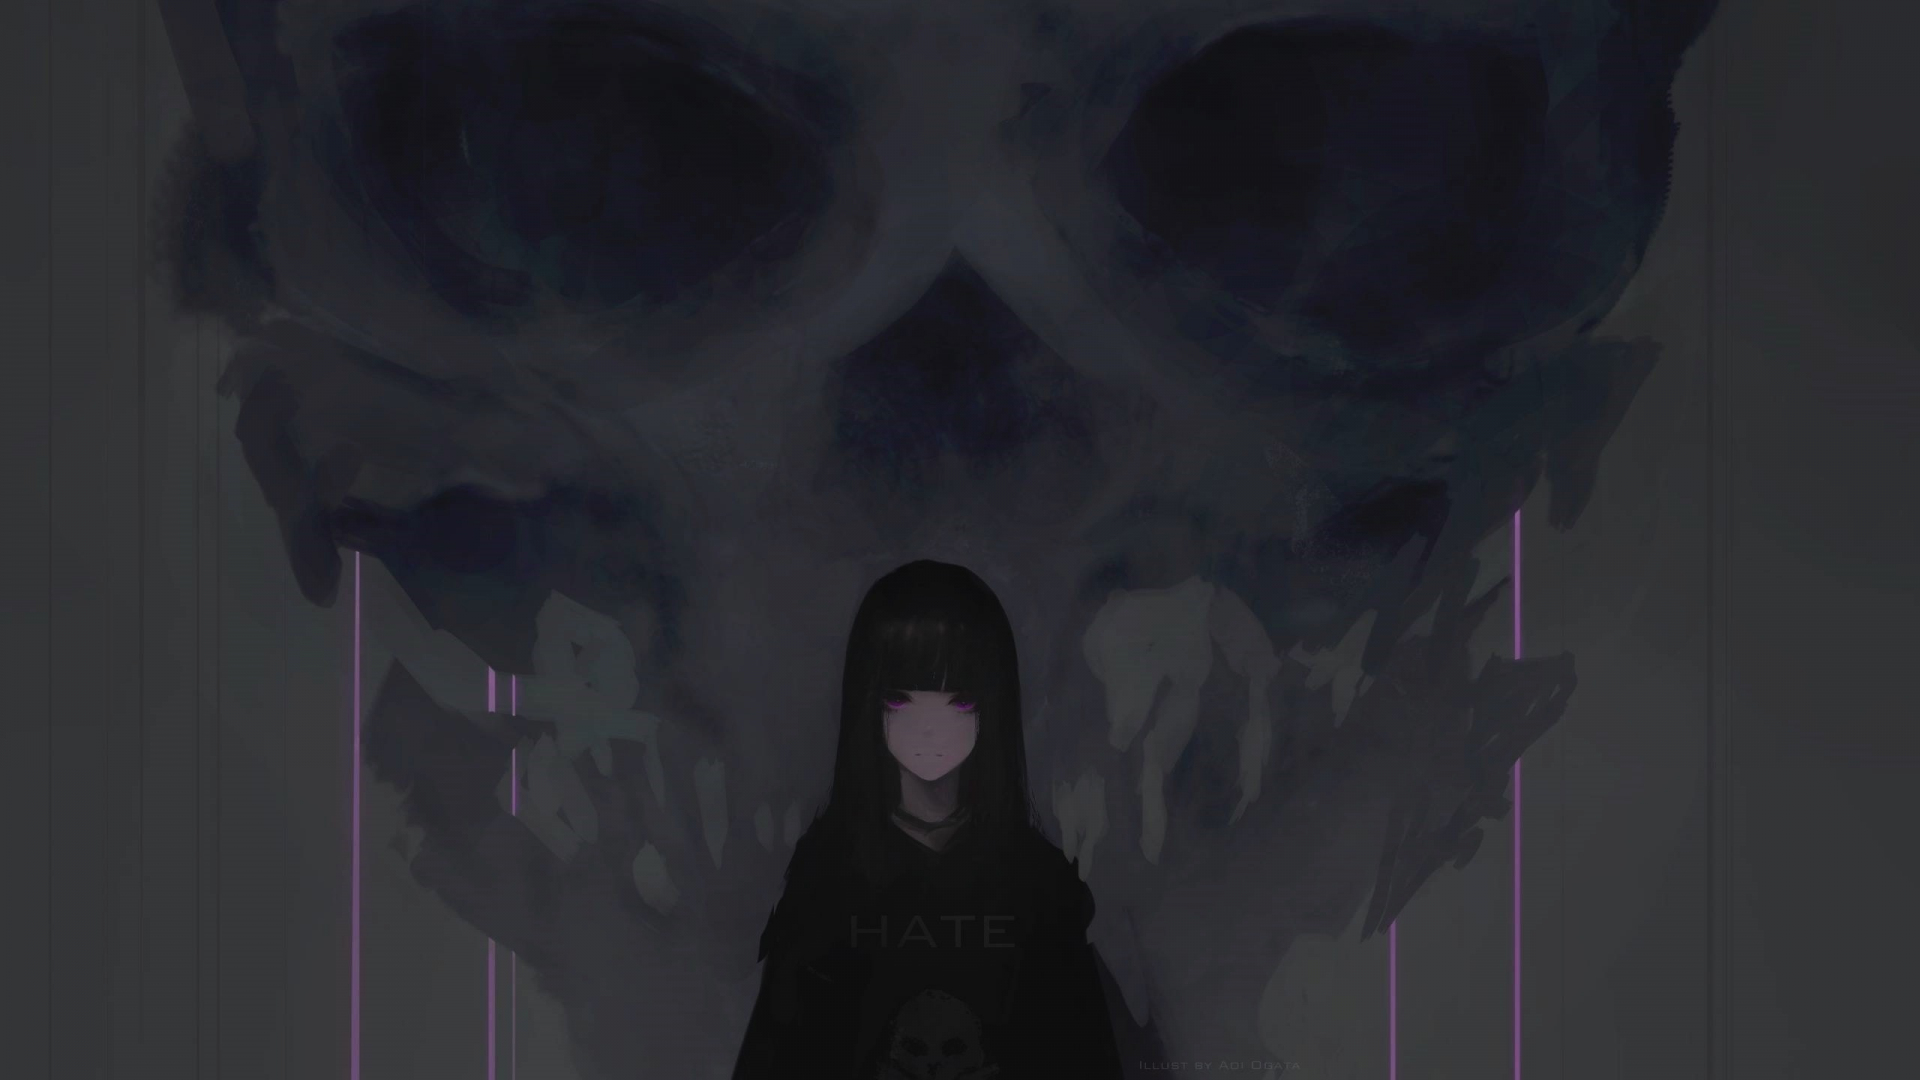 Download 1920x1080 Wallpaper Anime Girl Purple Eyes Dark Skull